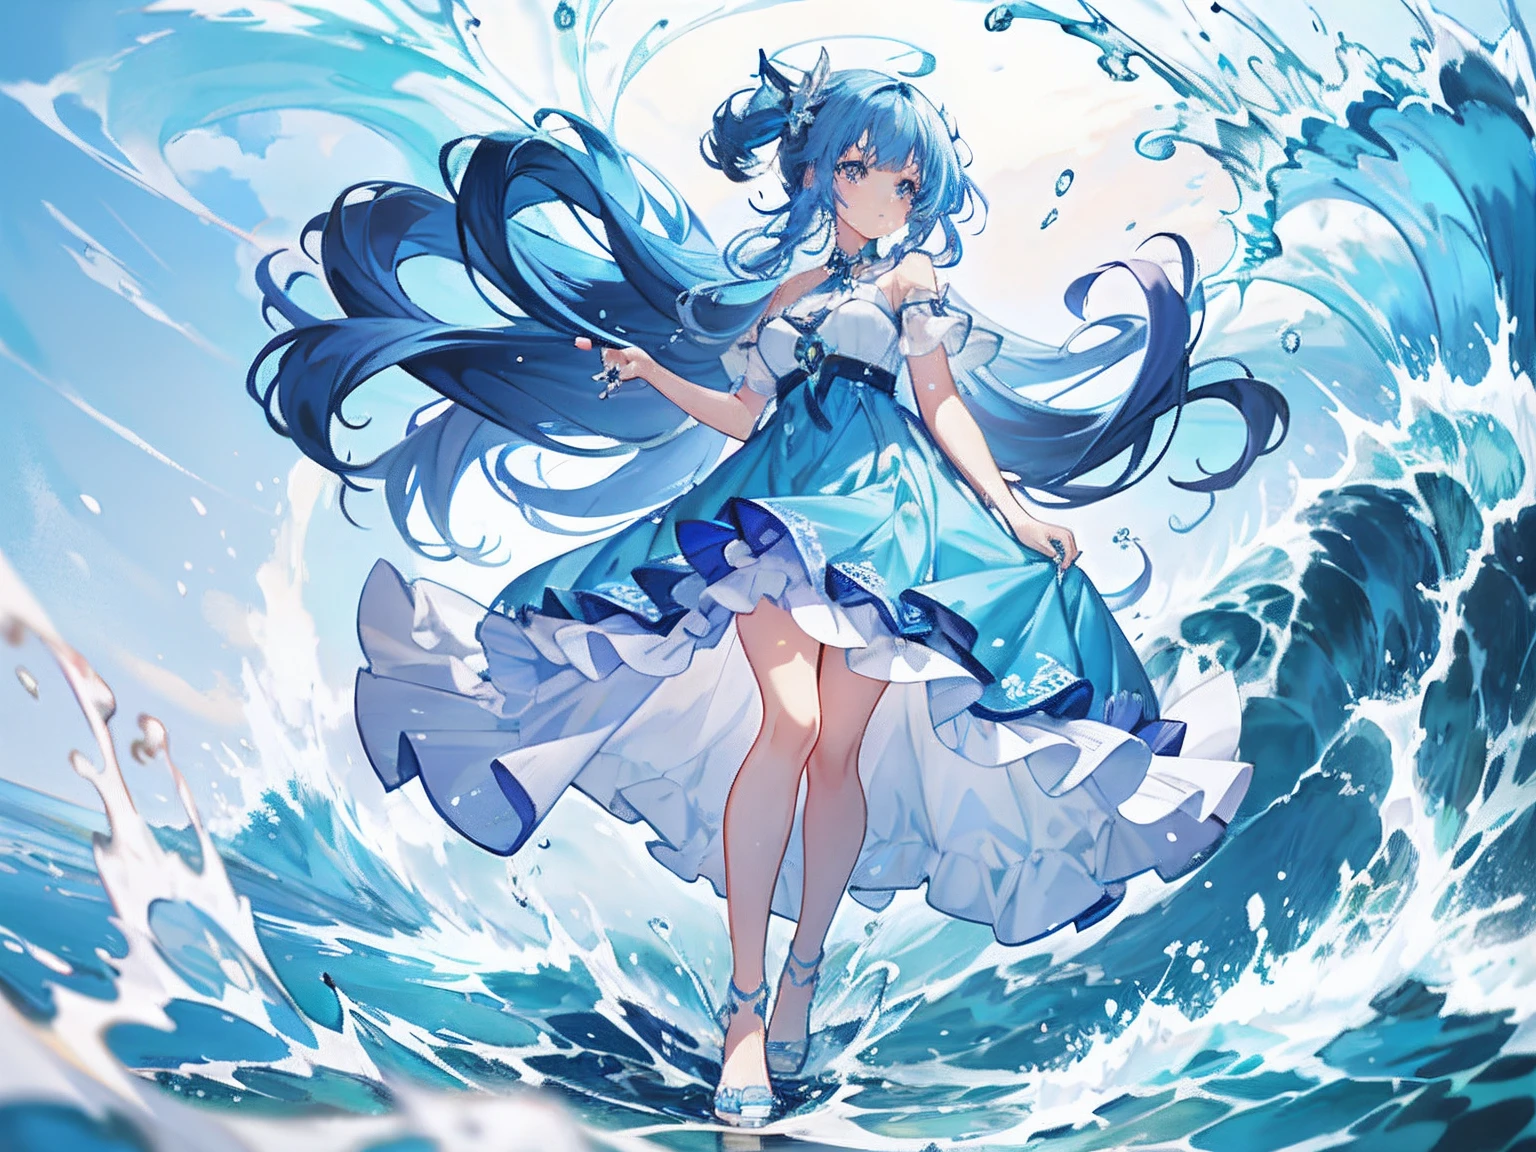 바다의 파도 위에 서 있는 파란 드레스를 입은 애니메이션 소녀, 벽지 애니메이션 푸른 물, 바다의 여신, 물의 정령, 스플래시 아트 애니메이션 Loli, 하늘빛 바다, 아트스테이션 pixiv에서 인기를 끌고 있는, pixiv의 디지털 아트, 바다의 여신, 물 위를 걷는 애니메이션 소녀, pixiv 콘테스트 우승자, 푸른 물의 파도, 